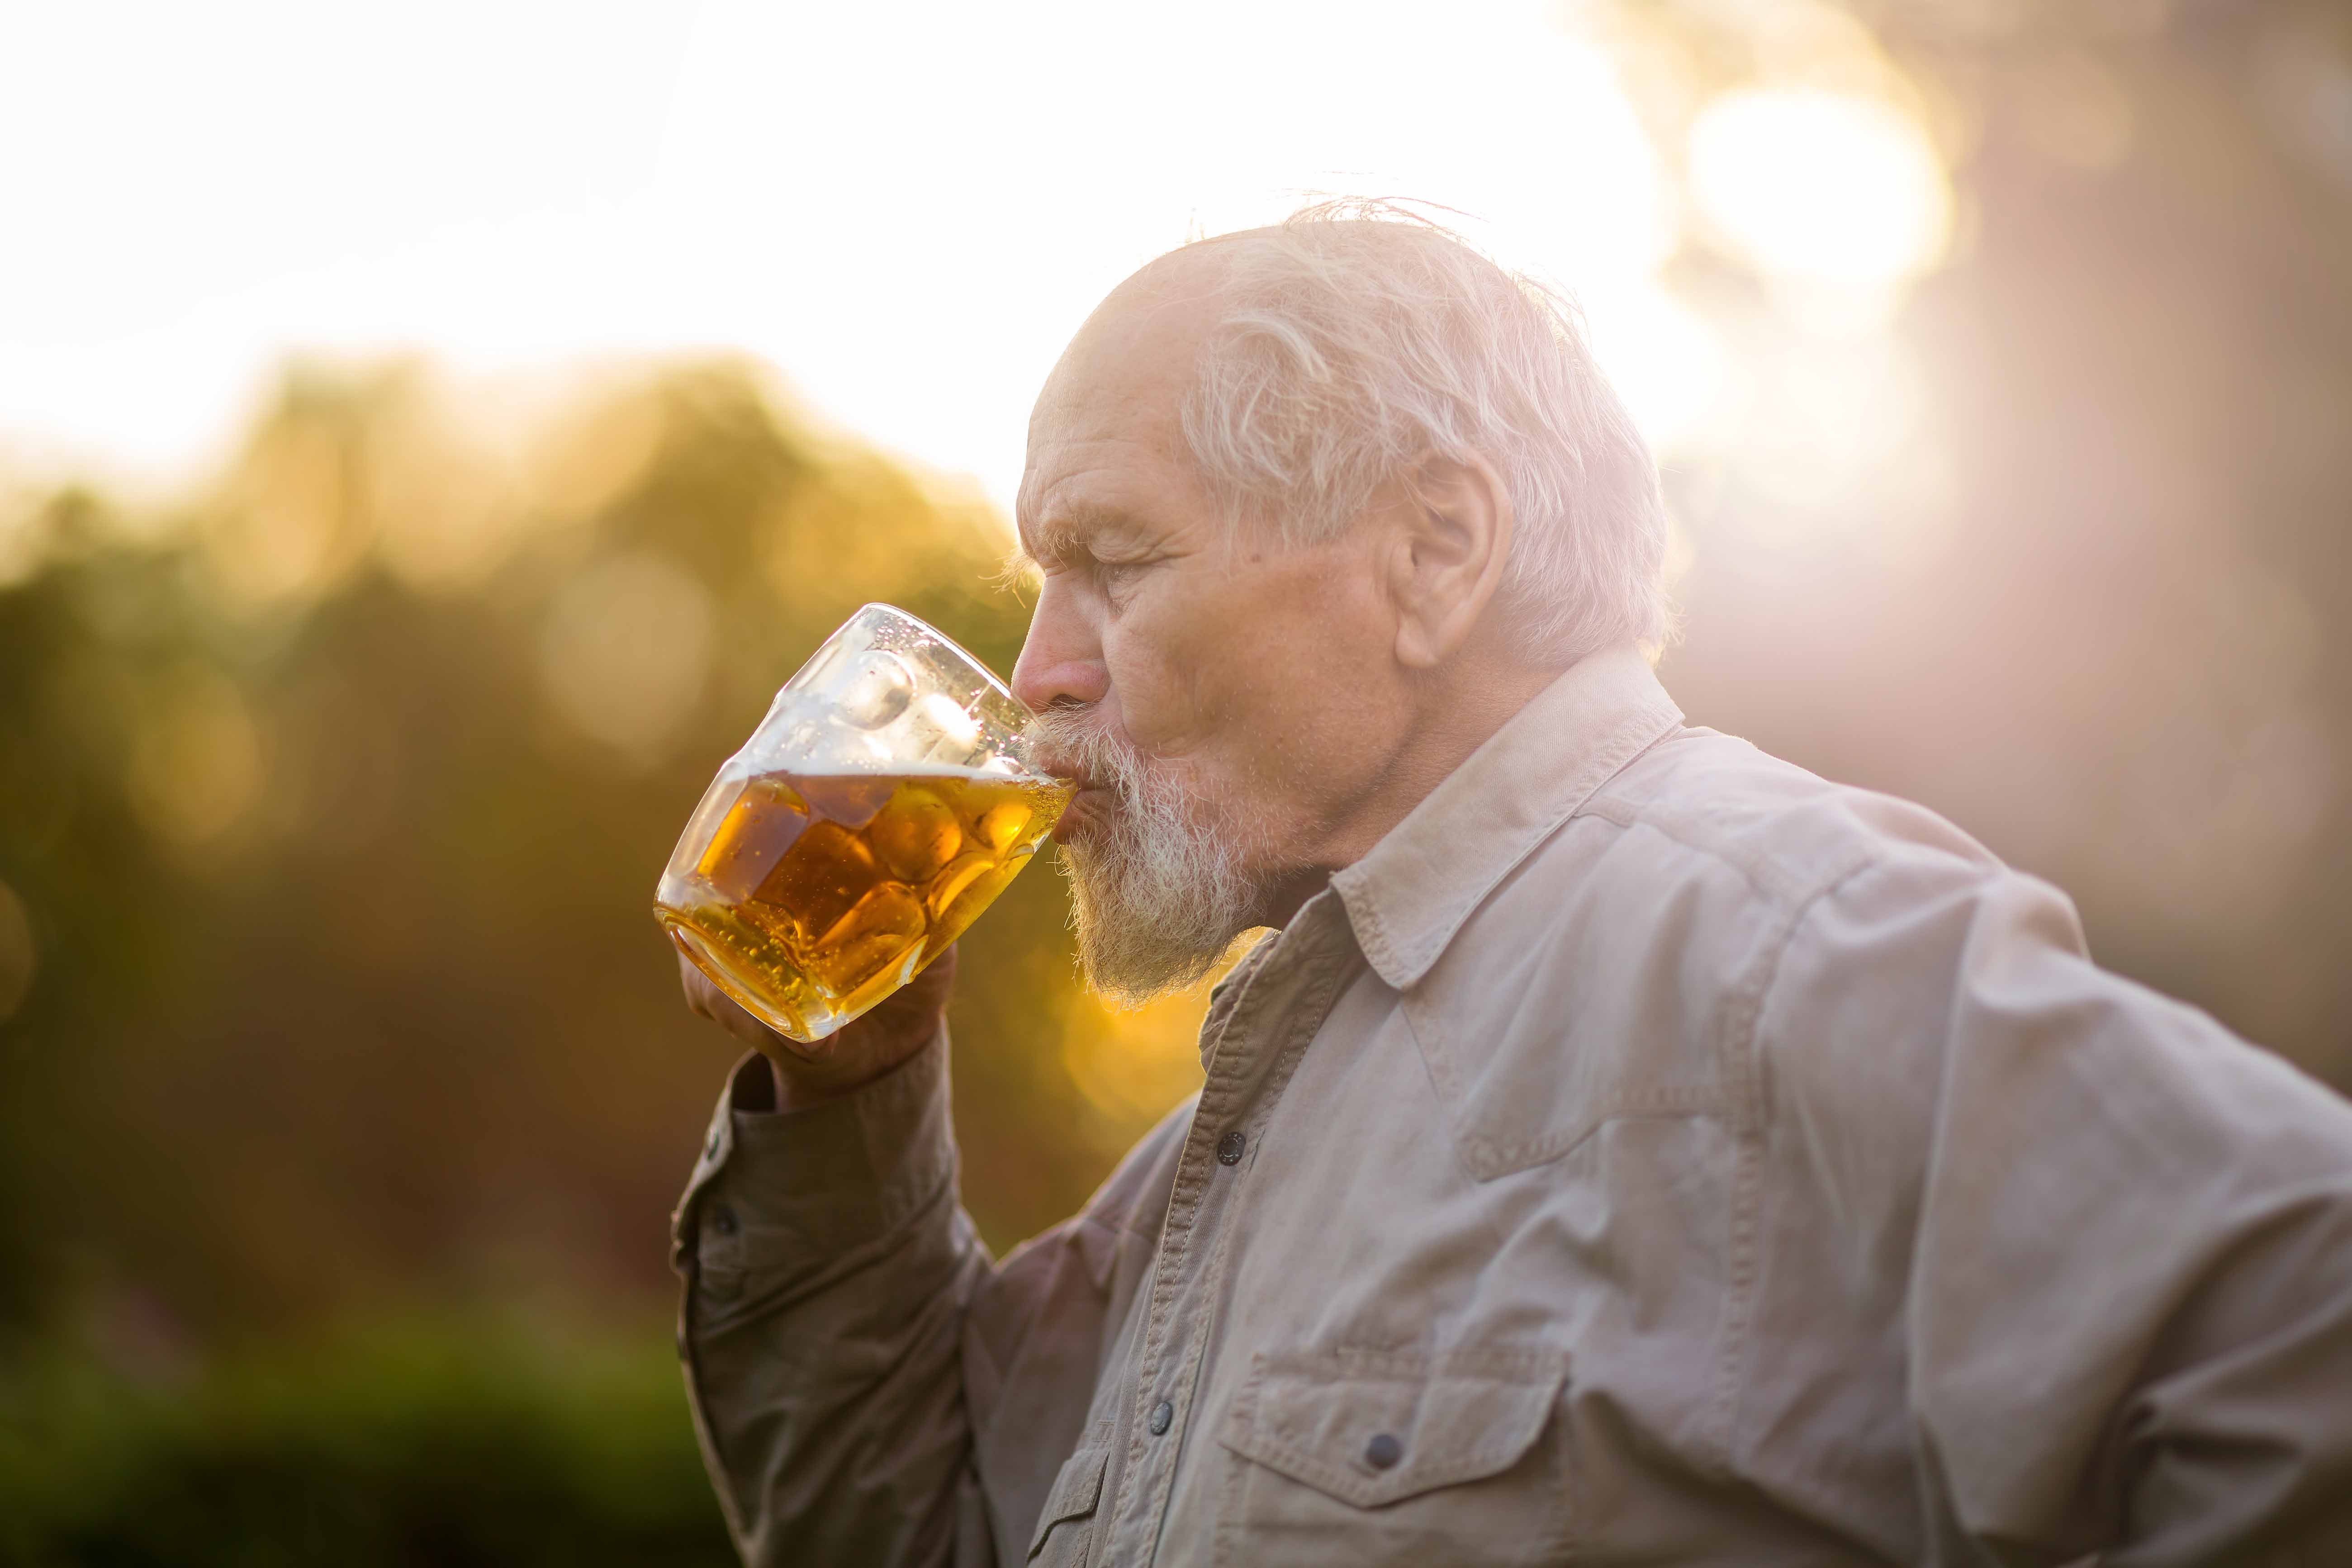  Ученые объяснили, зачем людям старше 60 лет нужно пить пиво каждый день 